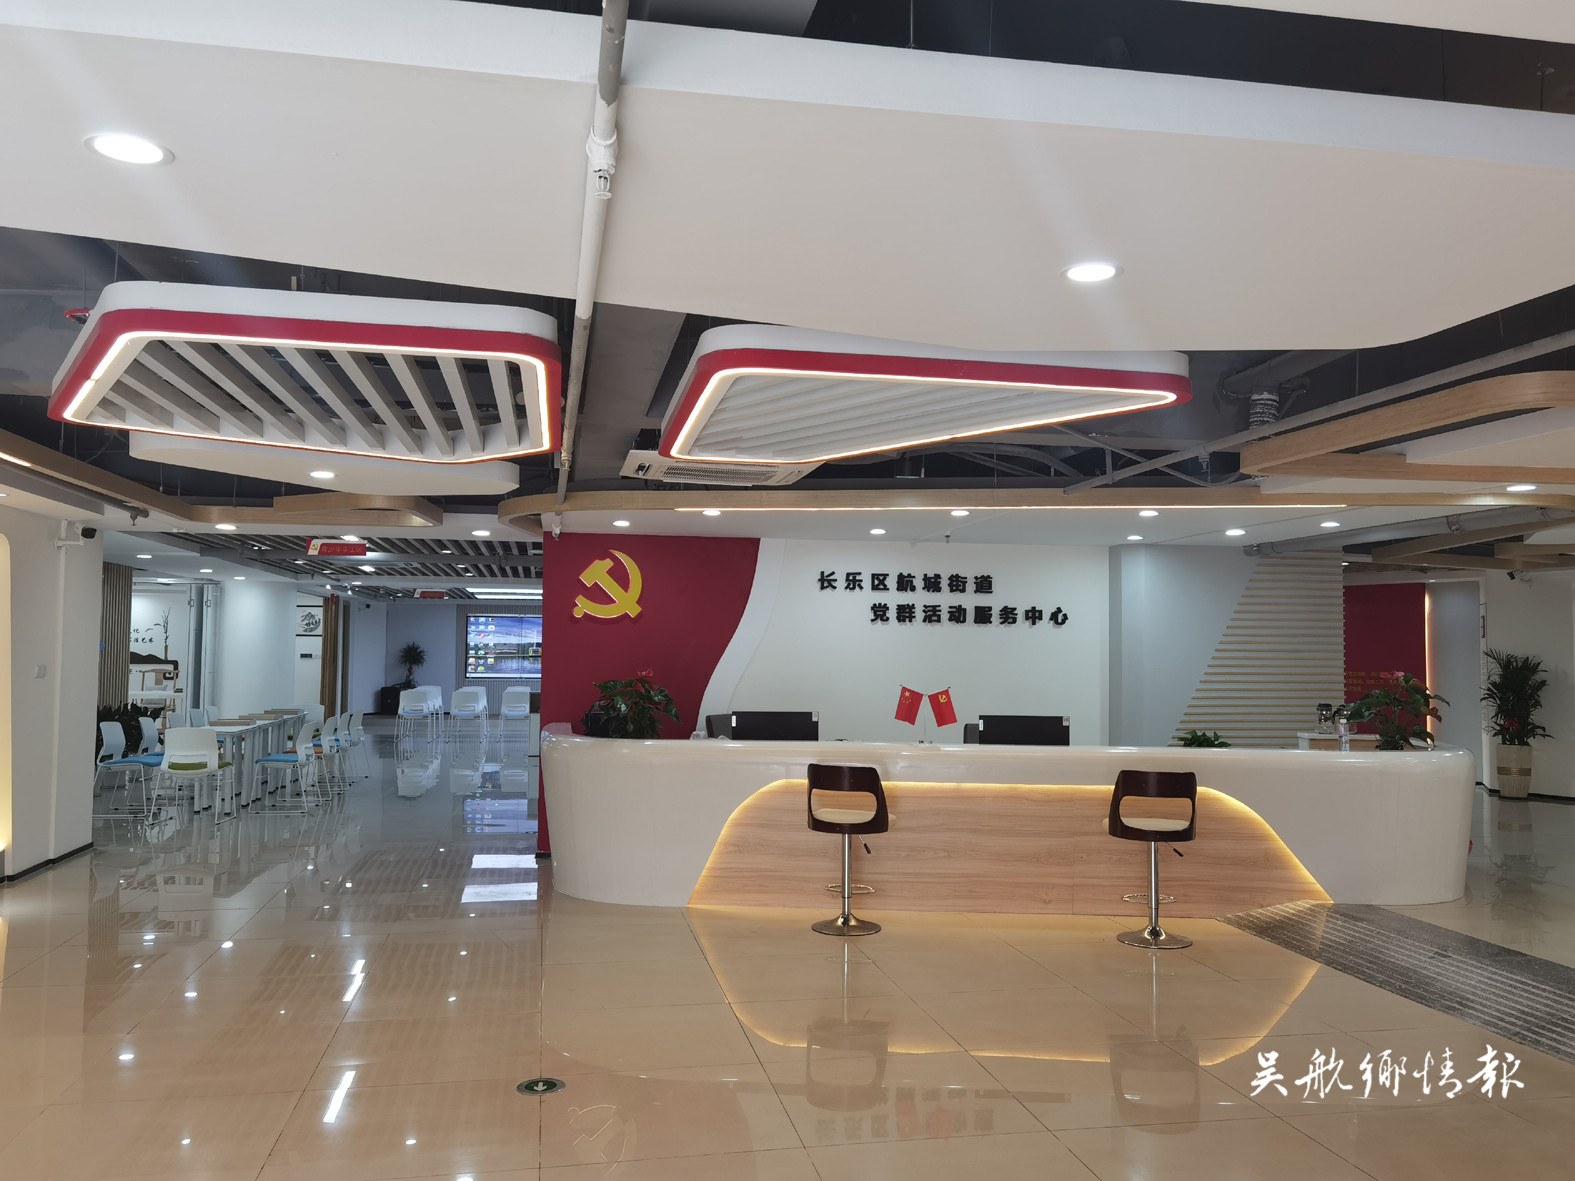 航城街道党群活动服务中心和仁辉社区民生小区近邻活动中心正式启用